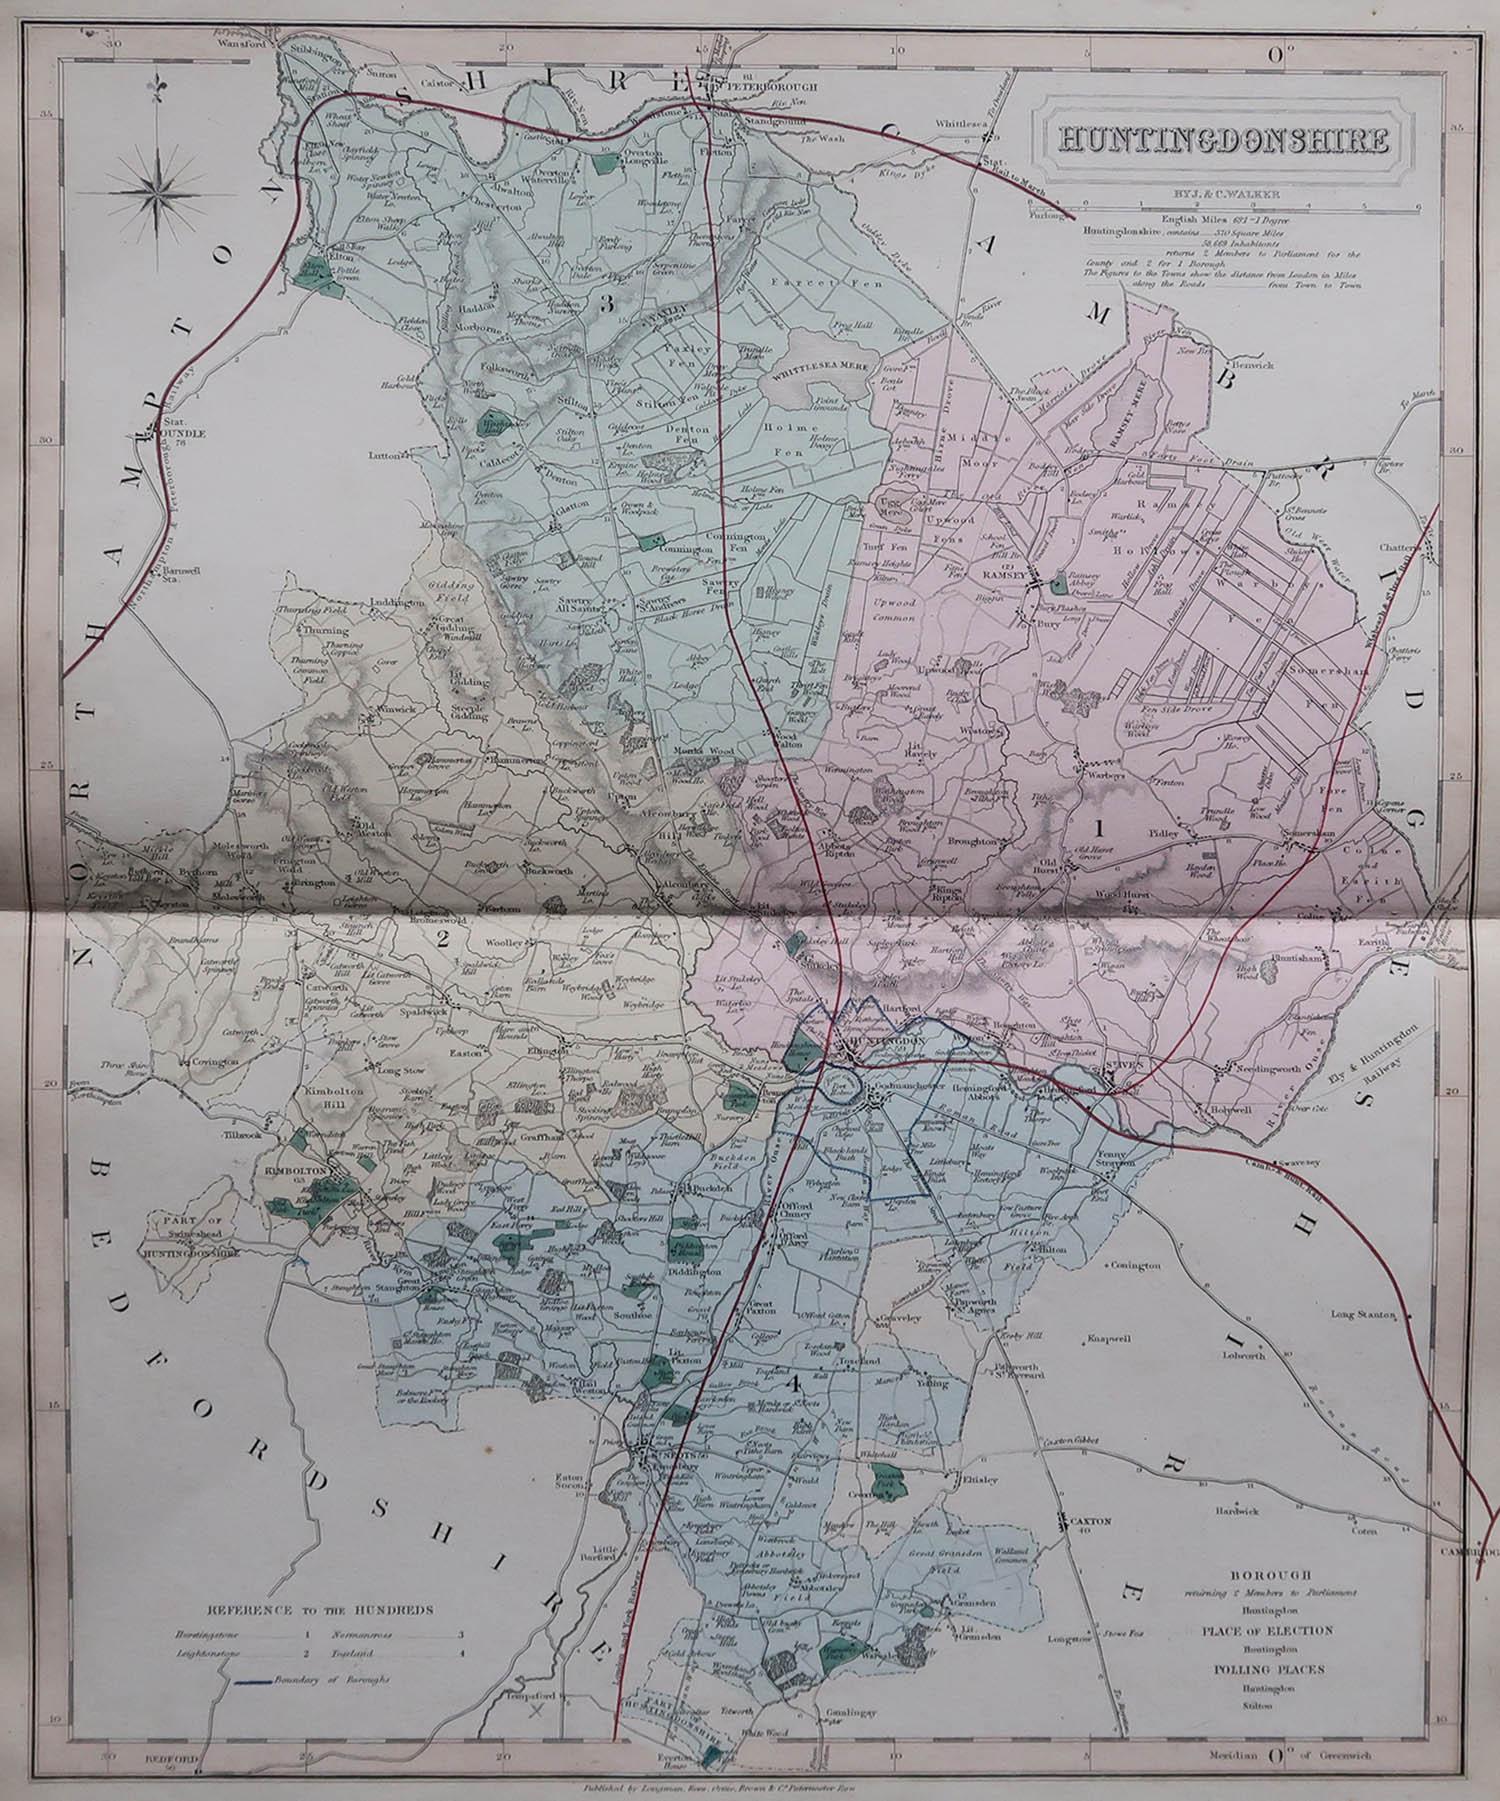 Große Karte von Huntingdonshire

Original Farbe

Von J & C Walker

Veröffentlicht von Longman, Rees, Orme, Brown & Co. 1851

Ungerahmt.




